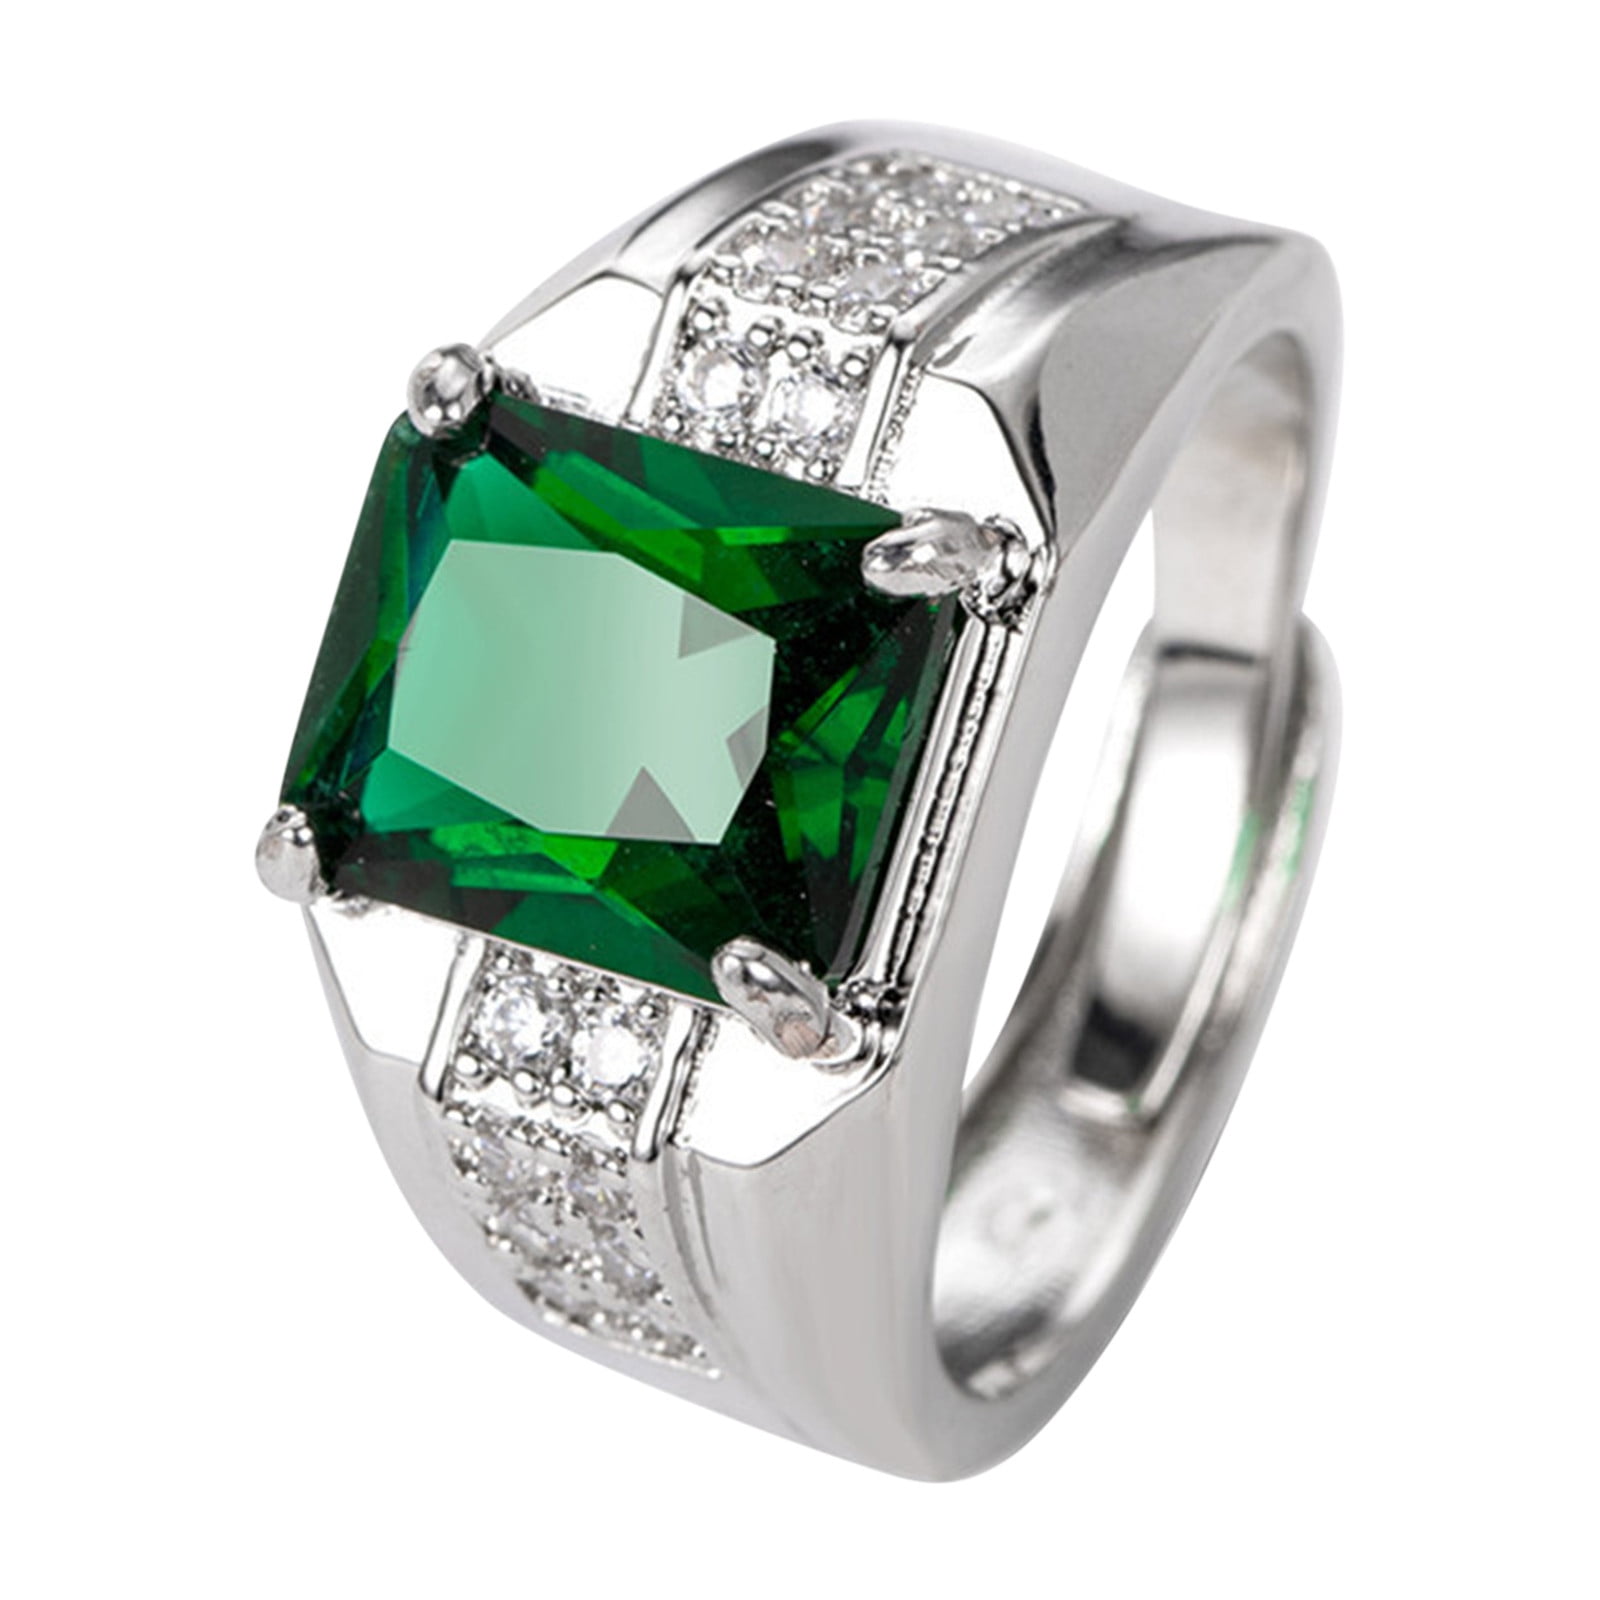 American Diamond Ring For Women & Girls - LvaCreation